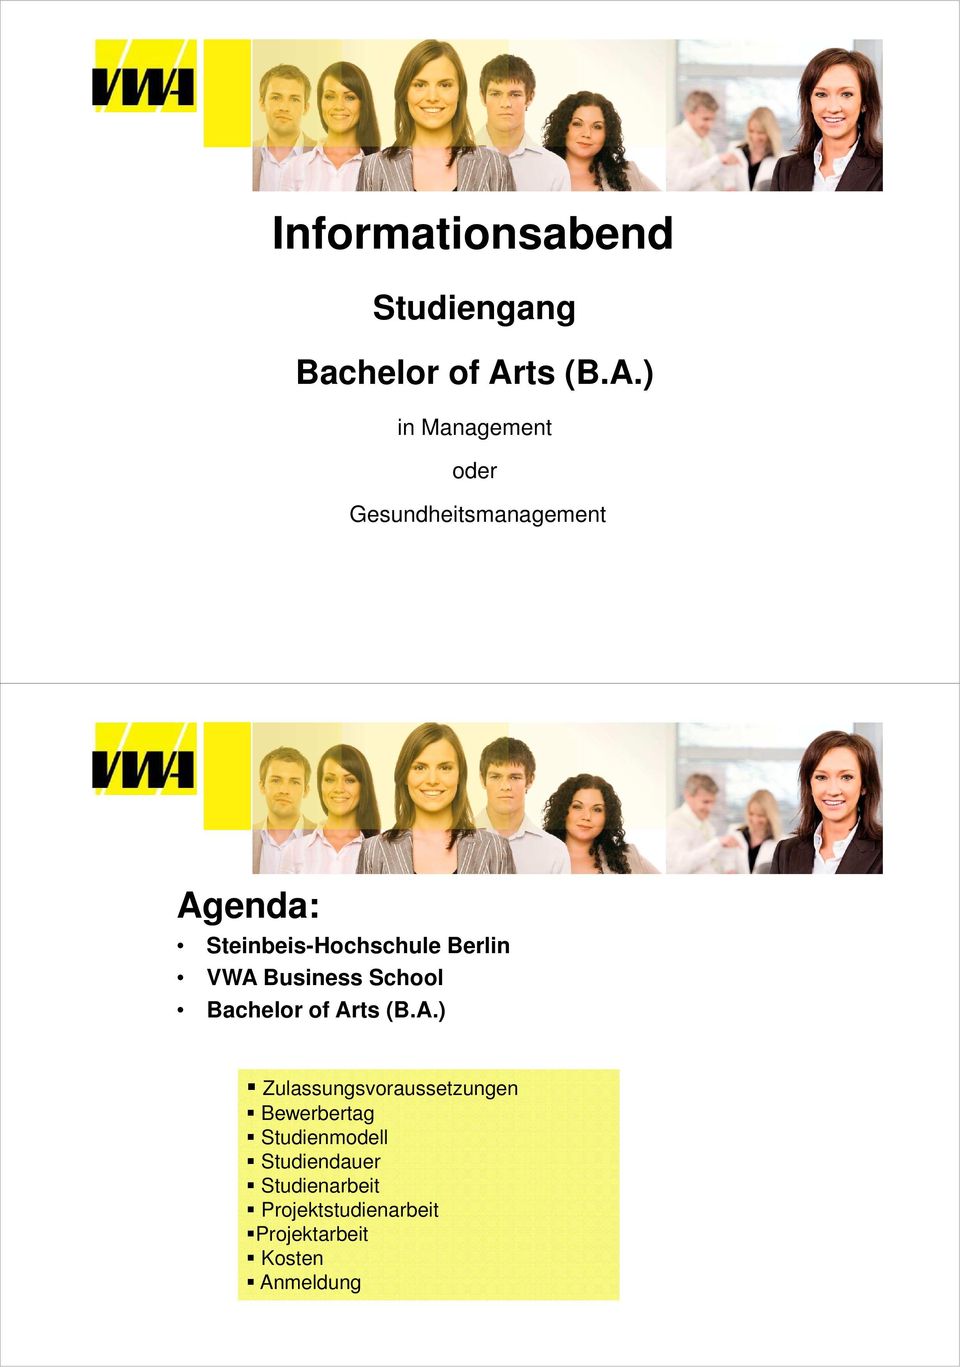 ) in Management oder Gesundheitsmanagement Agenda: Steinbeis-Hochschule